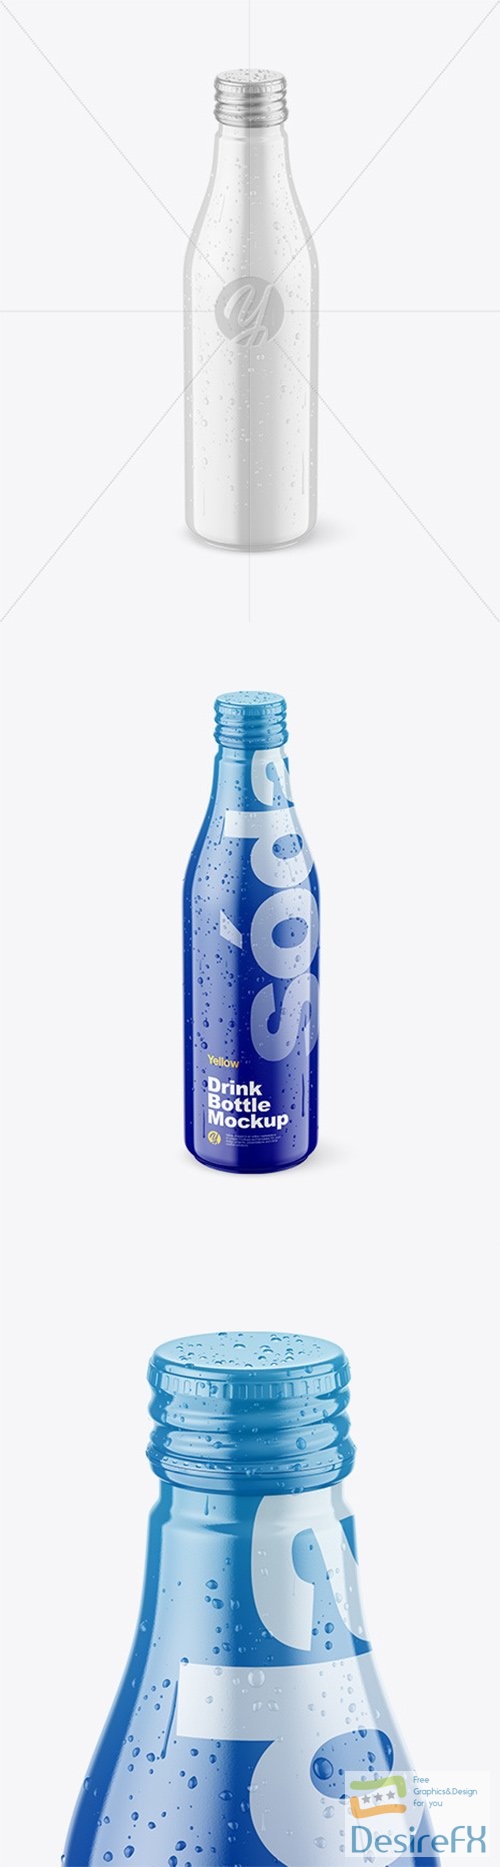 Glossy Drink Bottle w/ Drops Mockup 78312 TIF